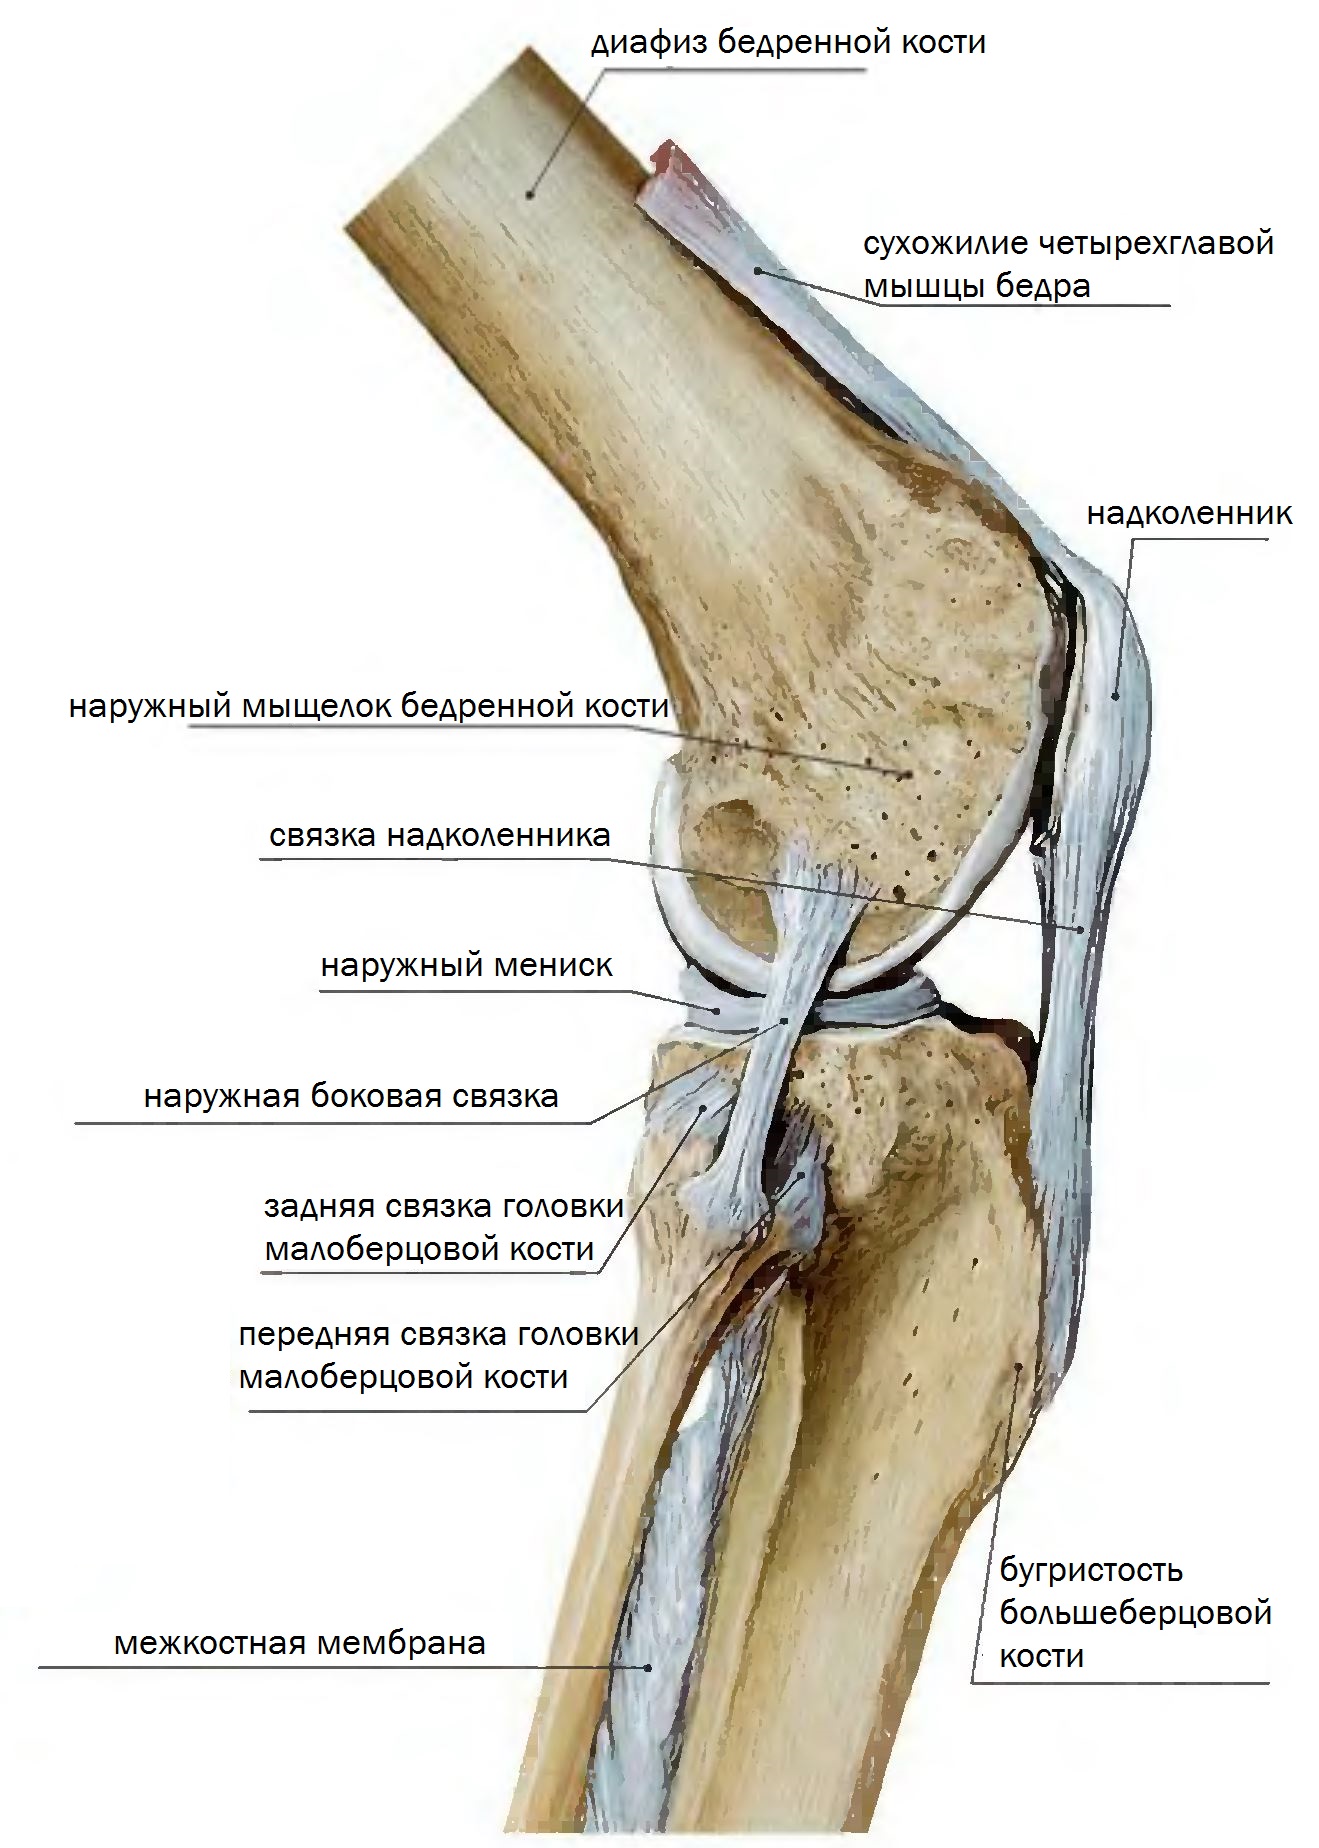 Мыщелок бедренной. Мыщелок коленного сустава большеберцовой кости. Коленный сустав анатомия связки надколенника. Коленный сустав малоберцовая кость. Передняя связка головки малоберцовой кости.